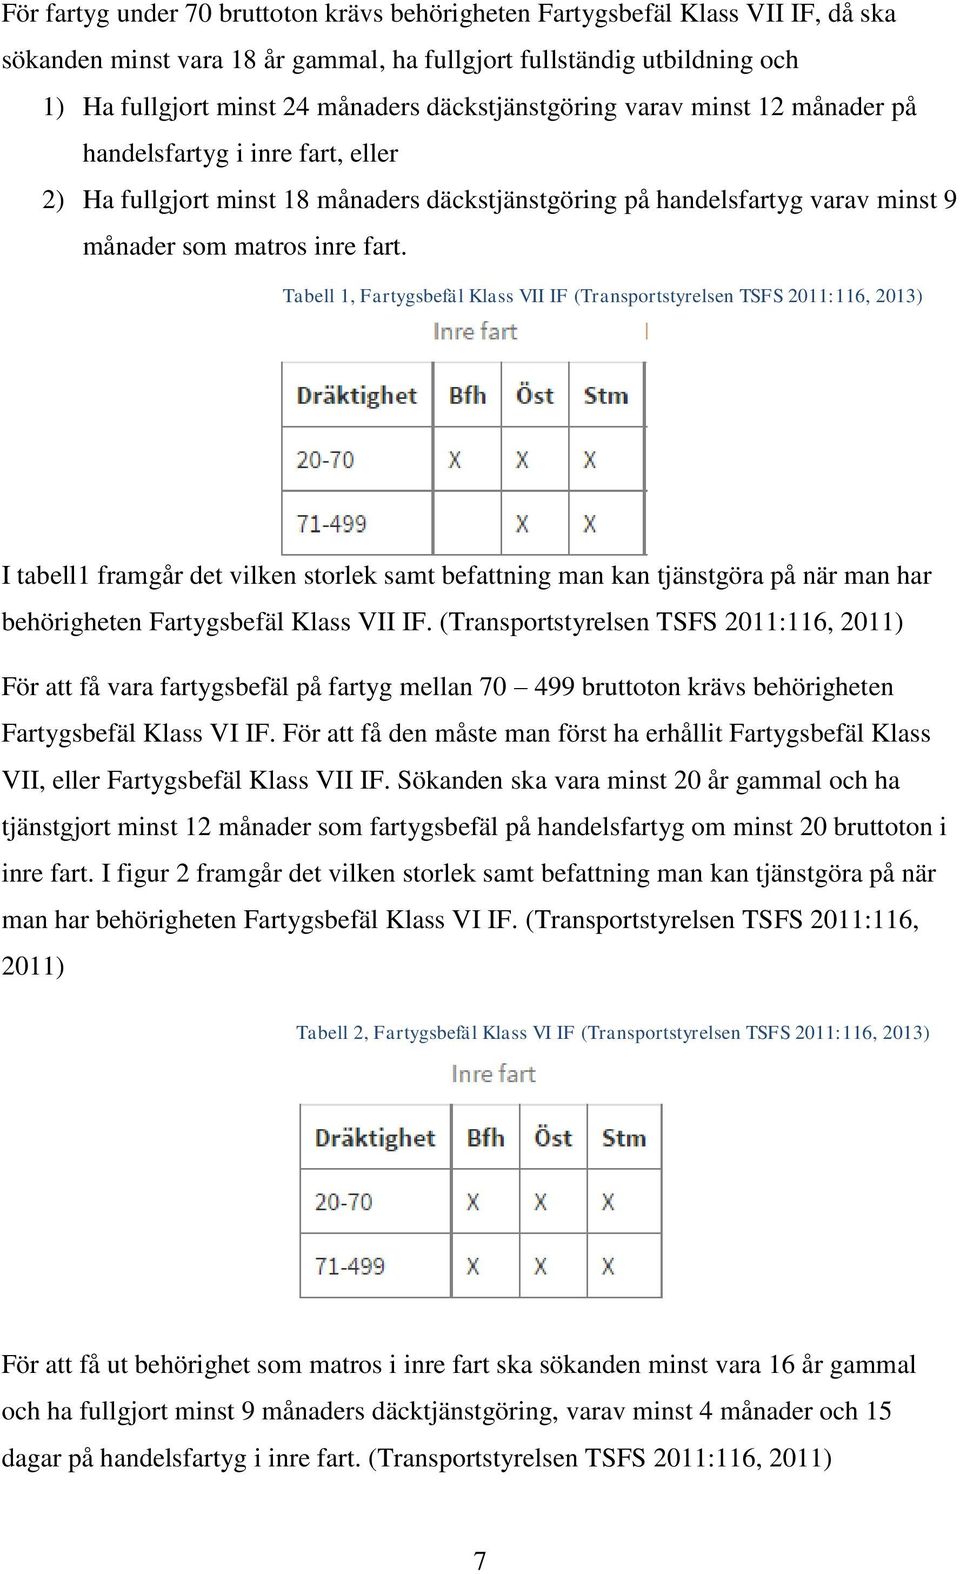 Tabell 1, Fartygsbefäl Klass VII IF (Transportstyrelsen TSFS 2011:116, 2013) I tabell1 framgår det vilken storlek samt befattning man kan tjänstgöra på när man har behörigheten Fartygsbefäl Klass VII